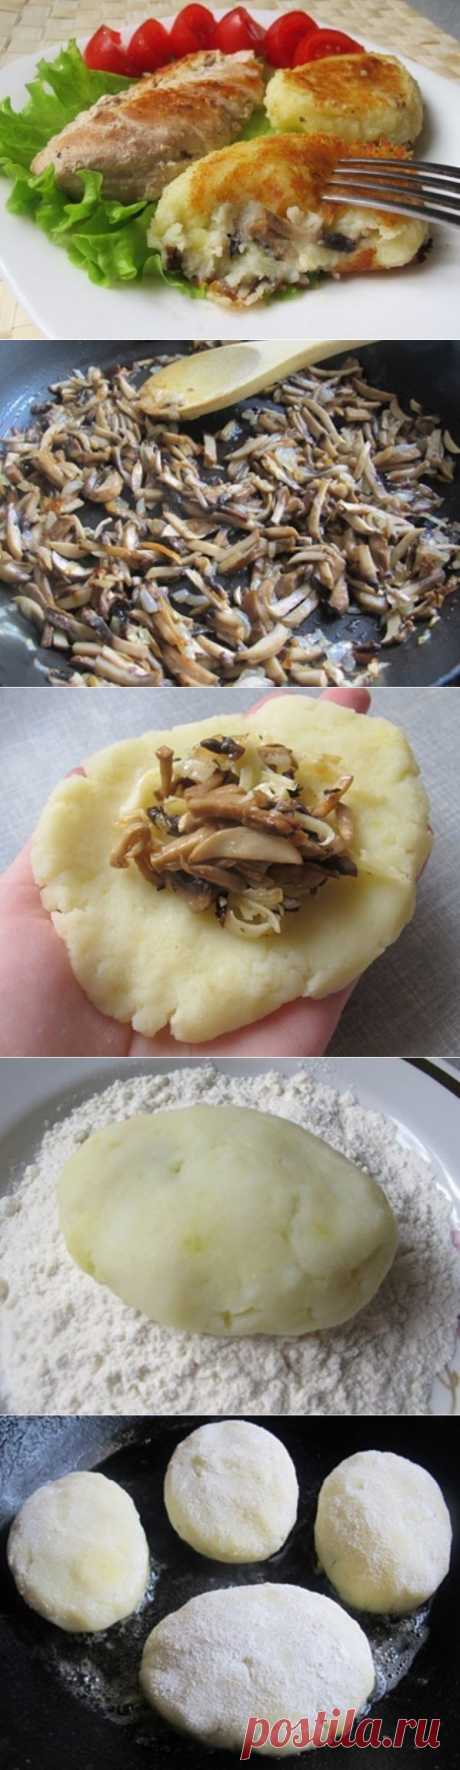 Как приготовить картофельные зразы с грибами! - рецепт, ингридиенты и фотографии